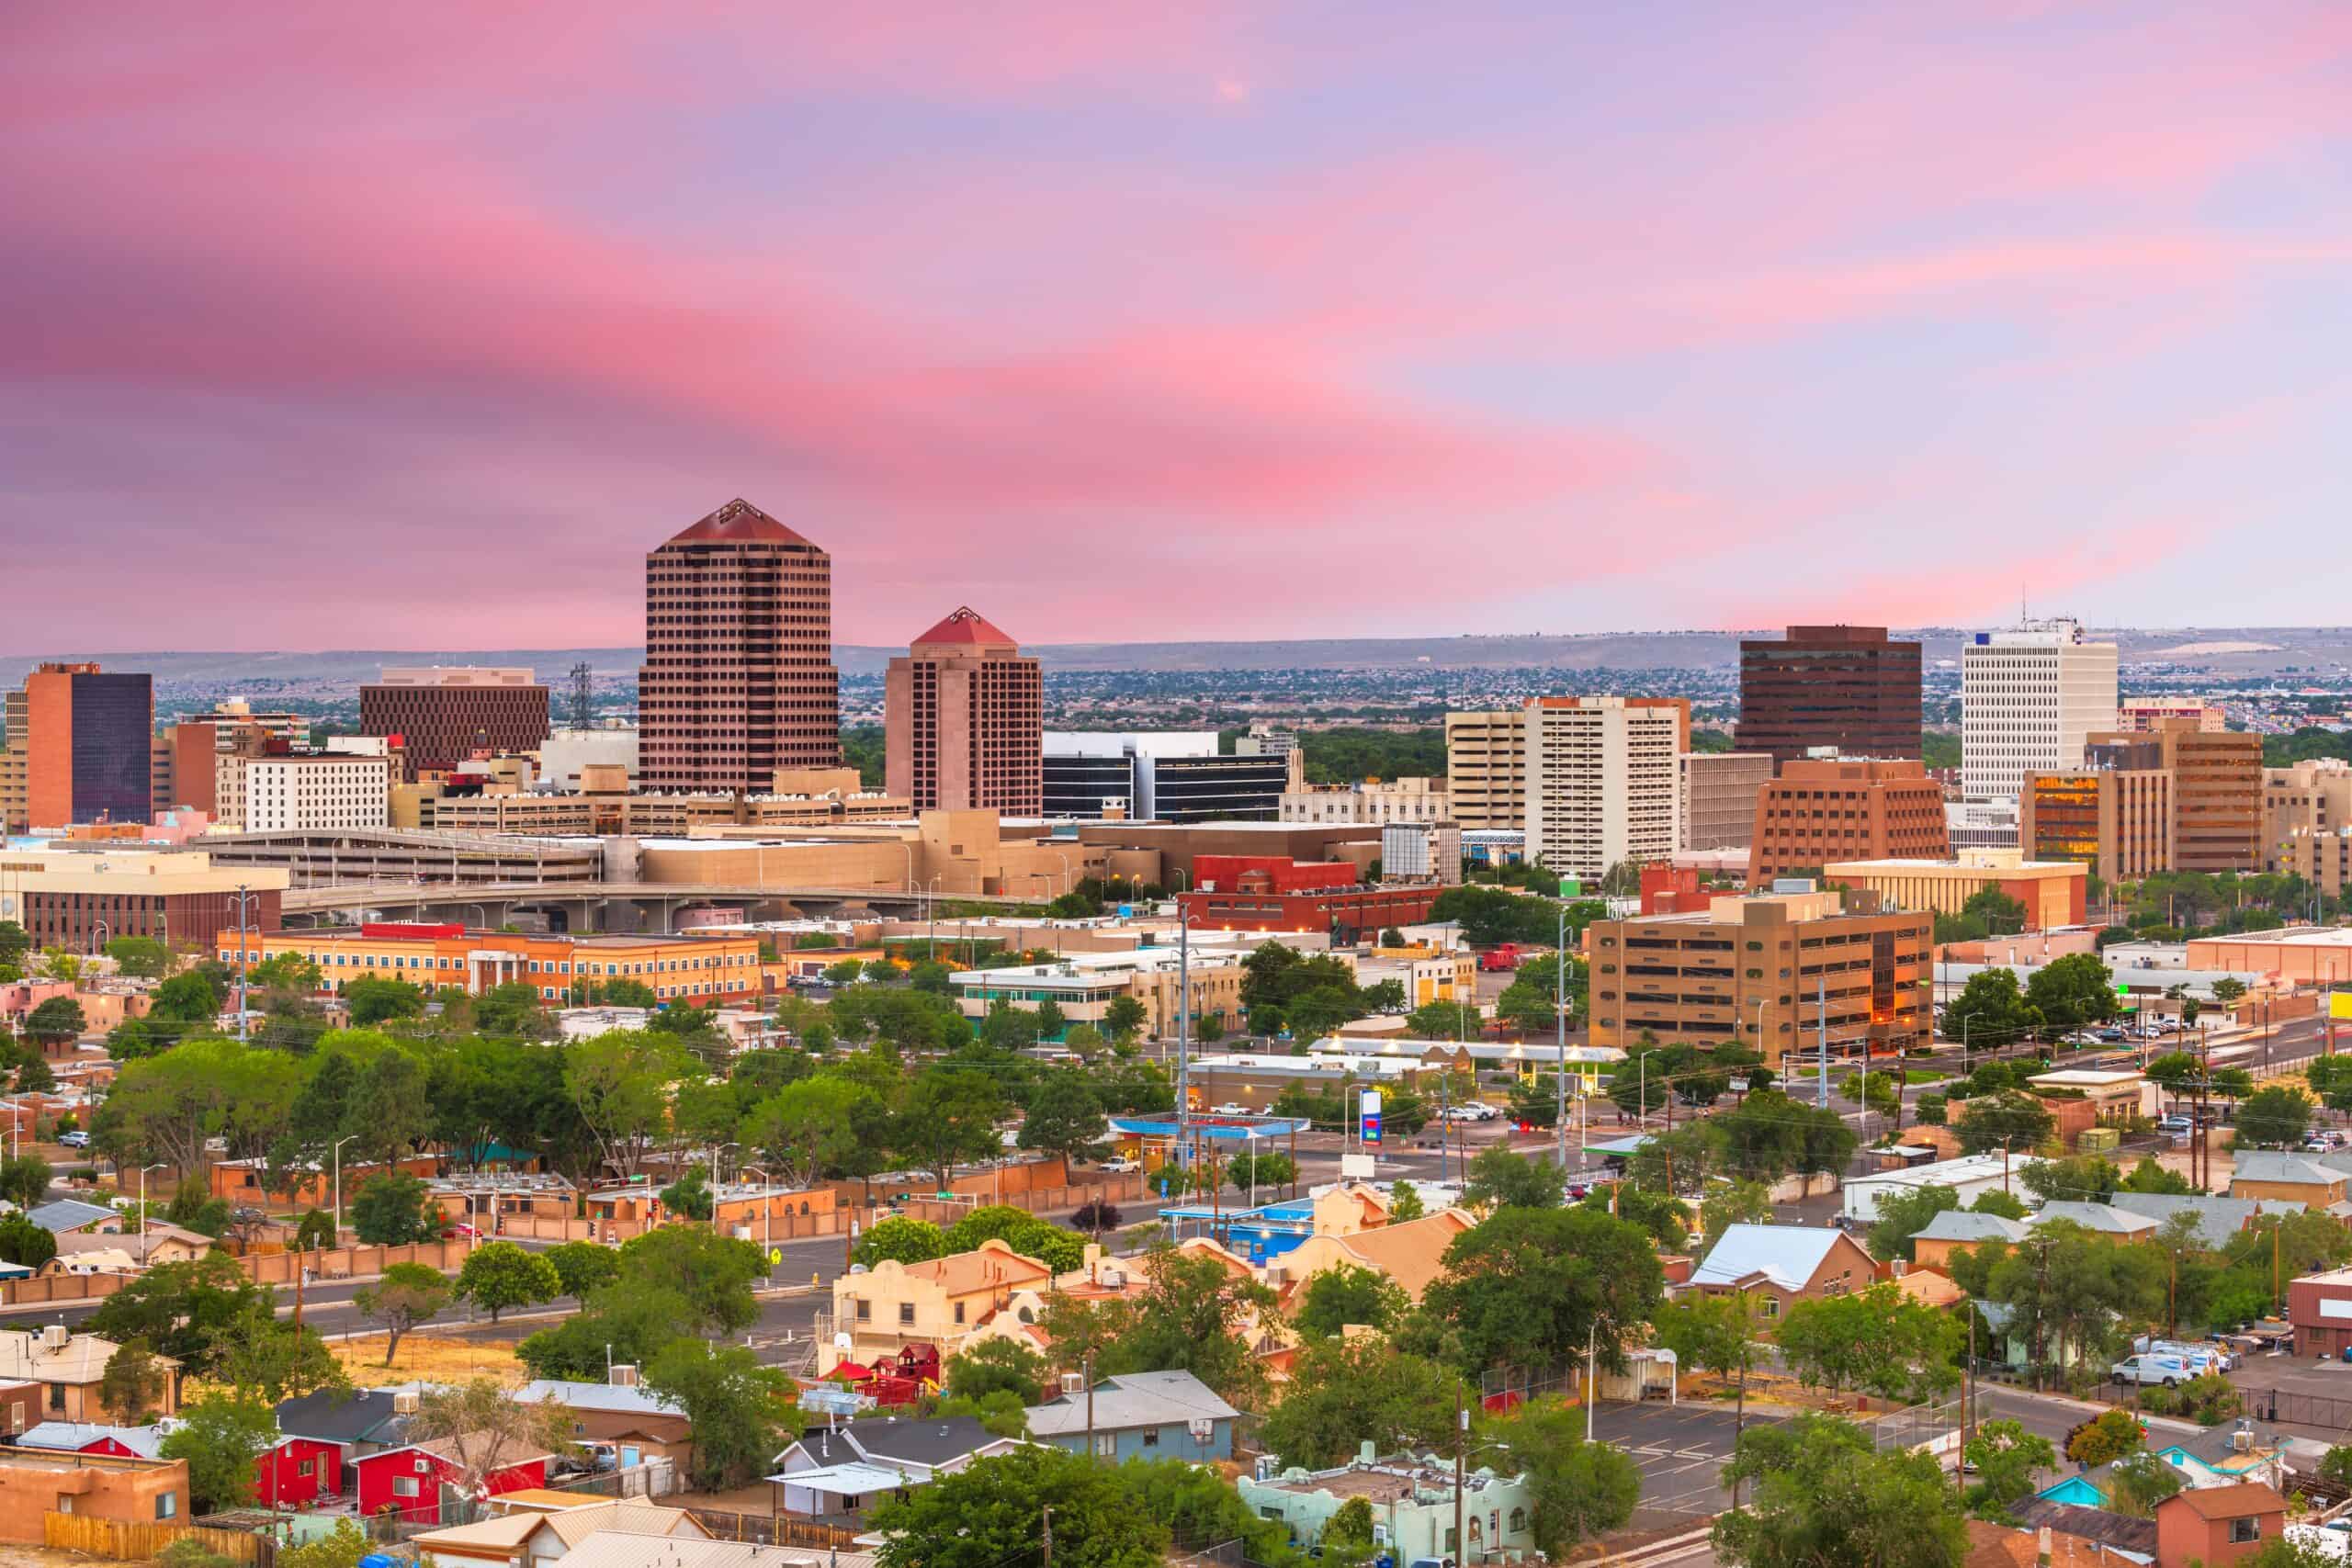 Albuquerque, New Mexico | Albuquerque, New Mexico, USA Cityscape